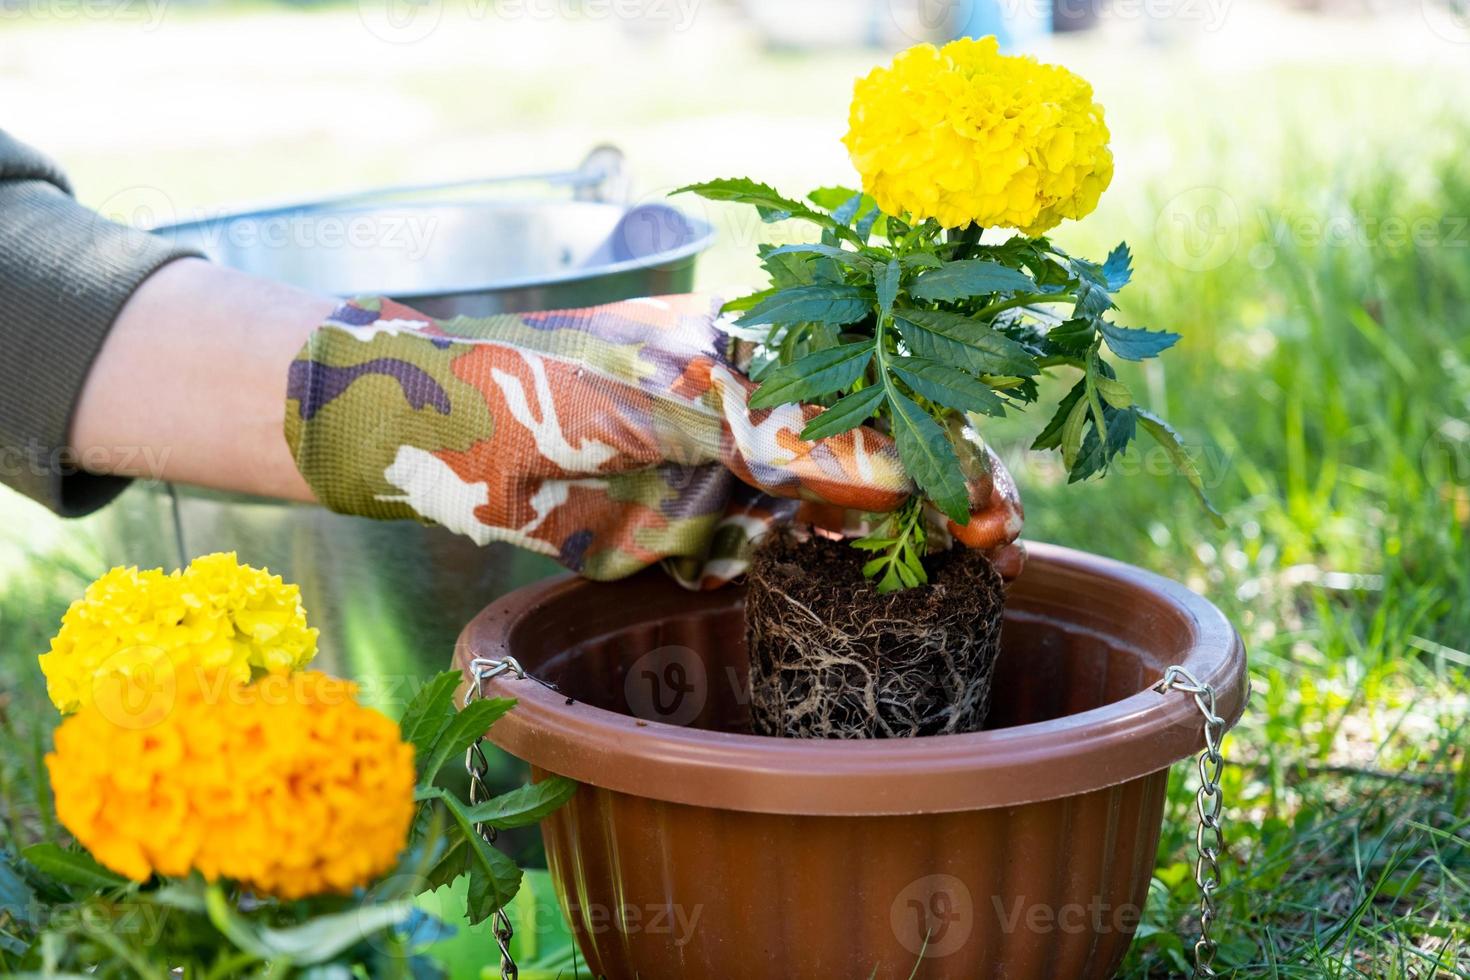 Gelb und Orange Ringelblume Sämlinge mit Wurzeln sind bereit zum Pflanzen im das öffnen Boden im Frühling. unprätentiös Garten Blumen im das Hände von ein Gärtner, Blume Bett und Hof Pflege foto